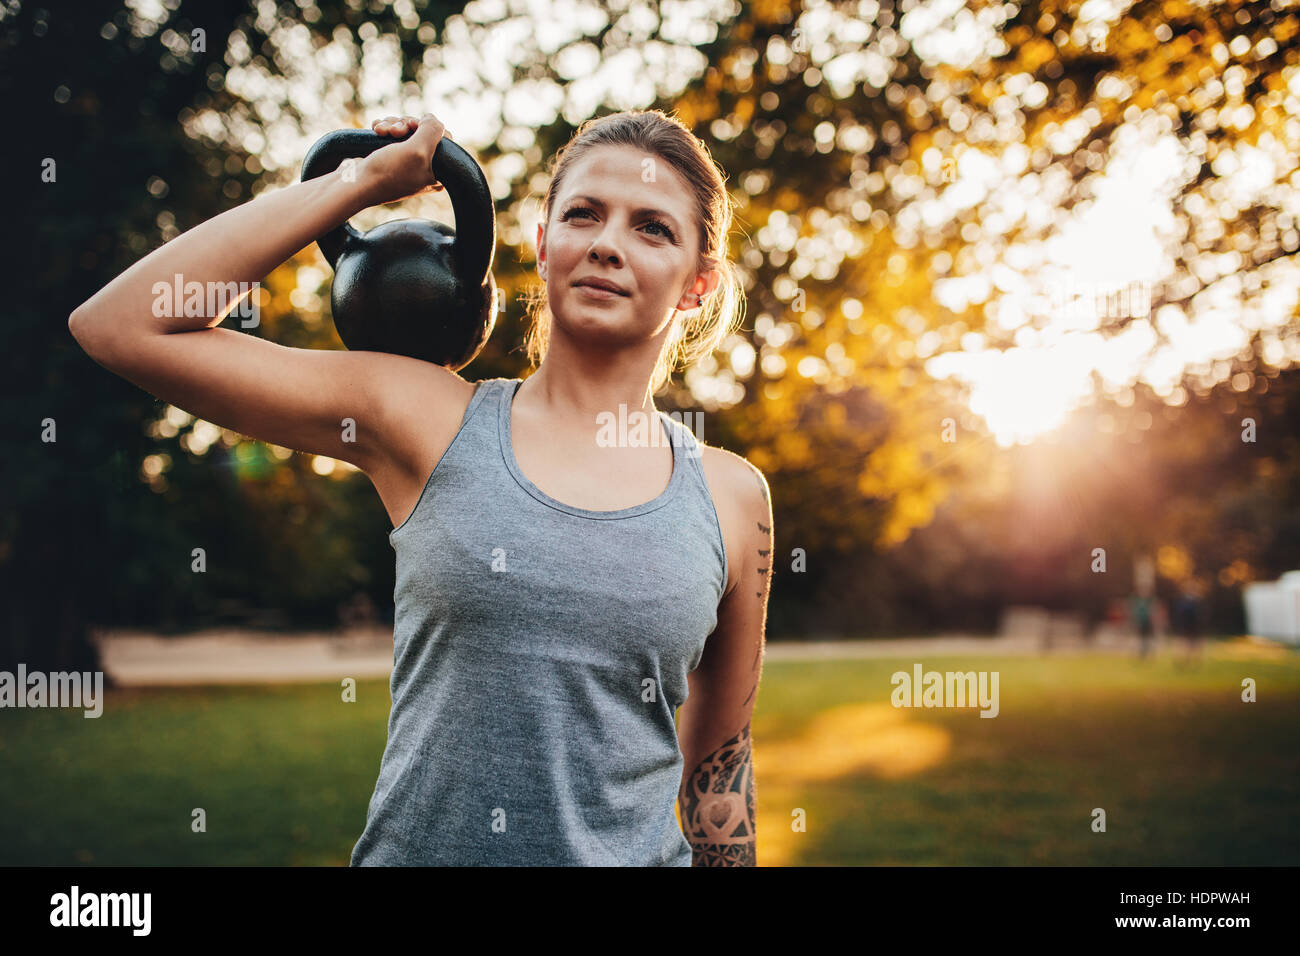 Colocar el retrato de mujer joven con kettlebell pesas en el parque. Mujer fitness entrenamiento con pesas en el parque. Foto de stock